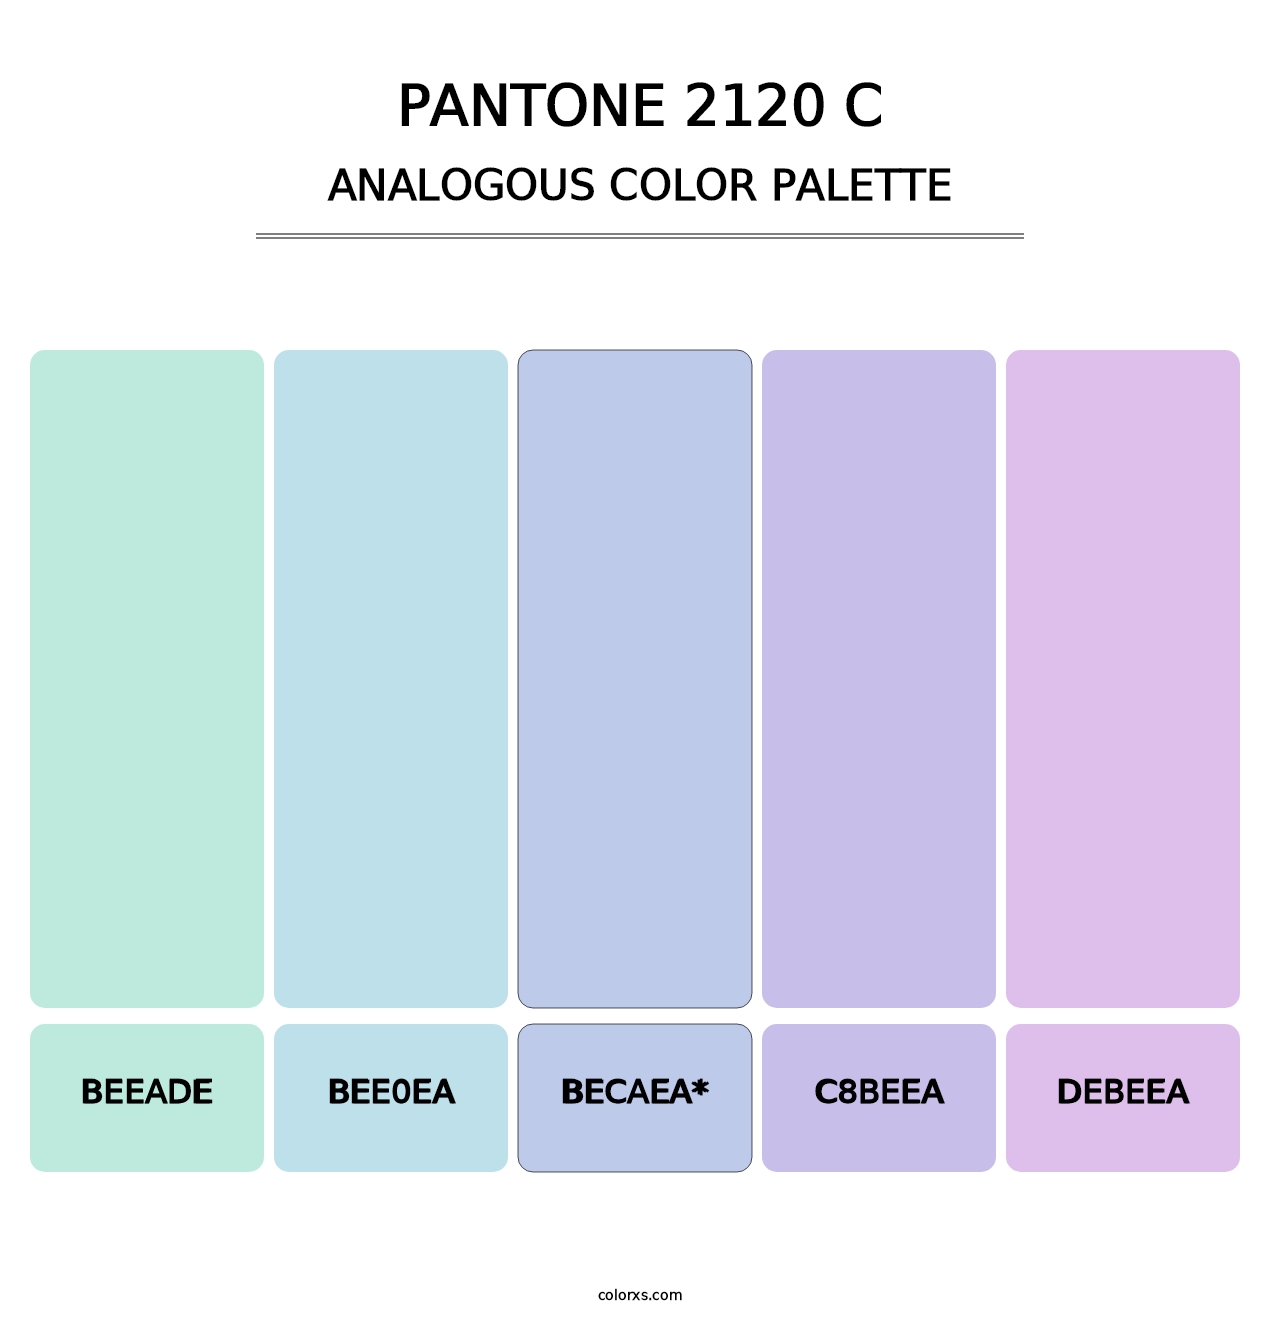 PANTONE 2120 C - Analogous Color Palette